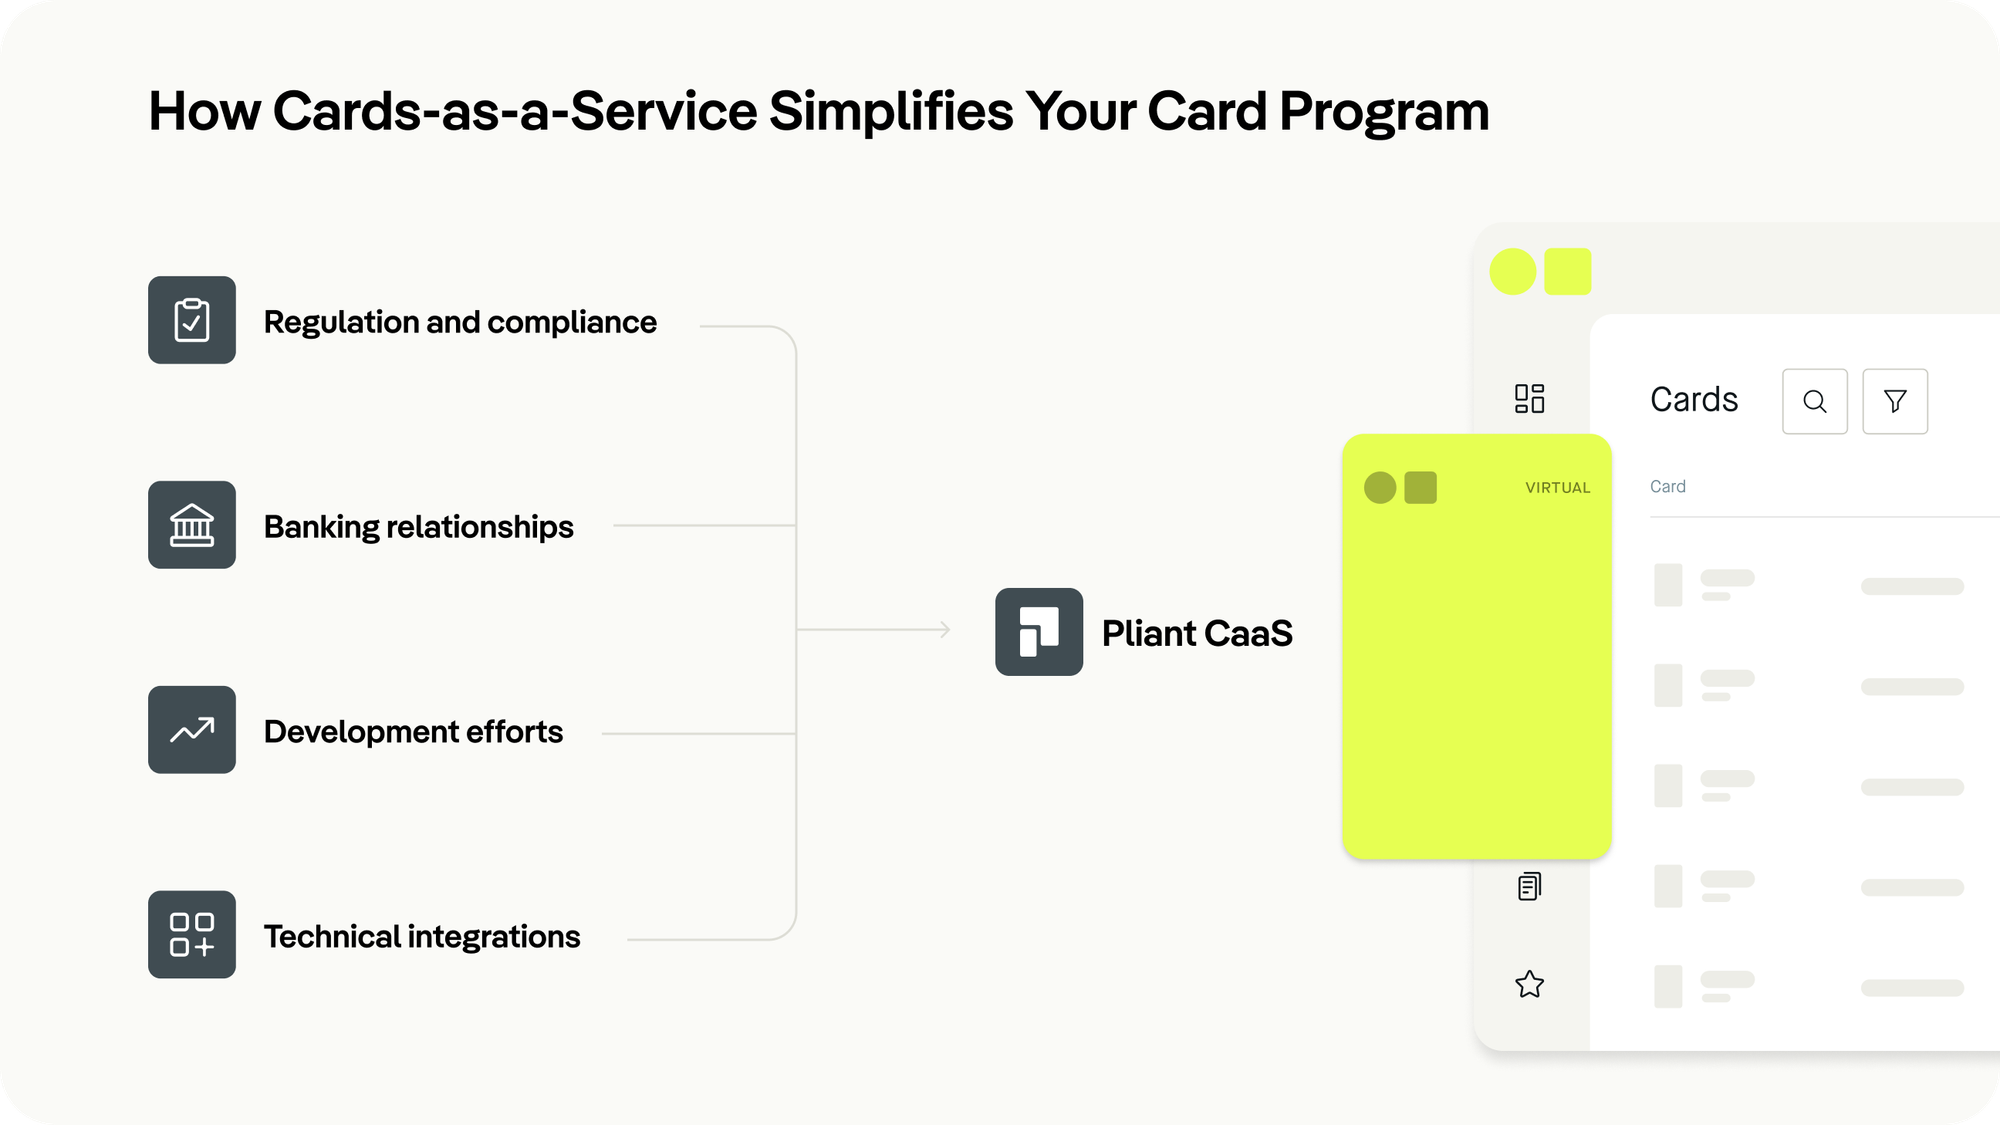 How CaaS simplifies card programs